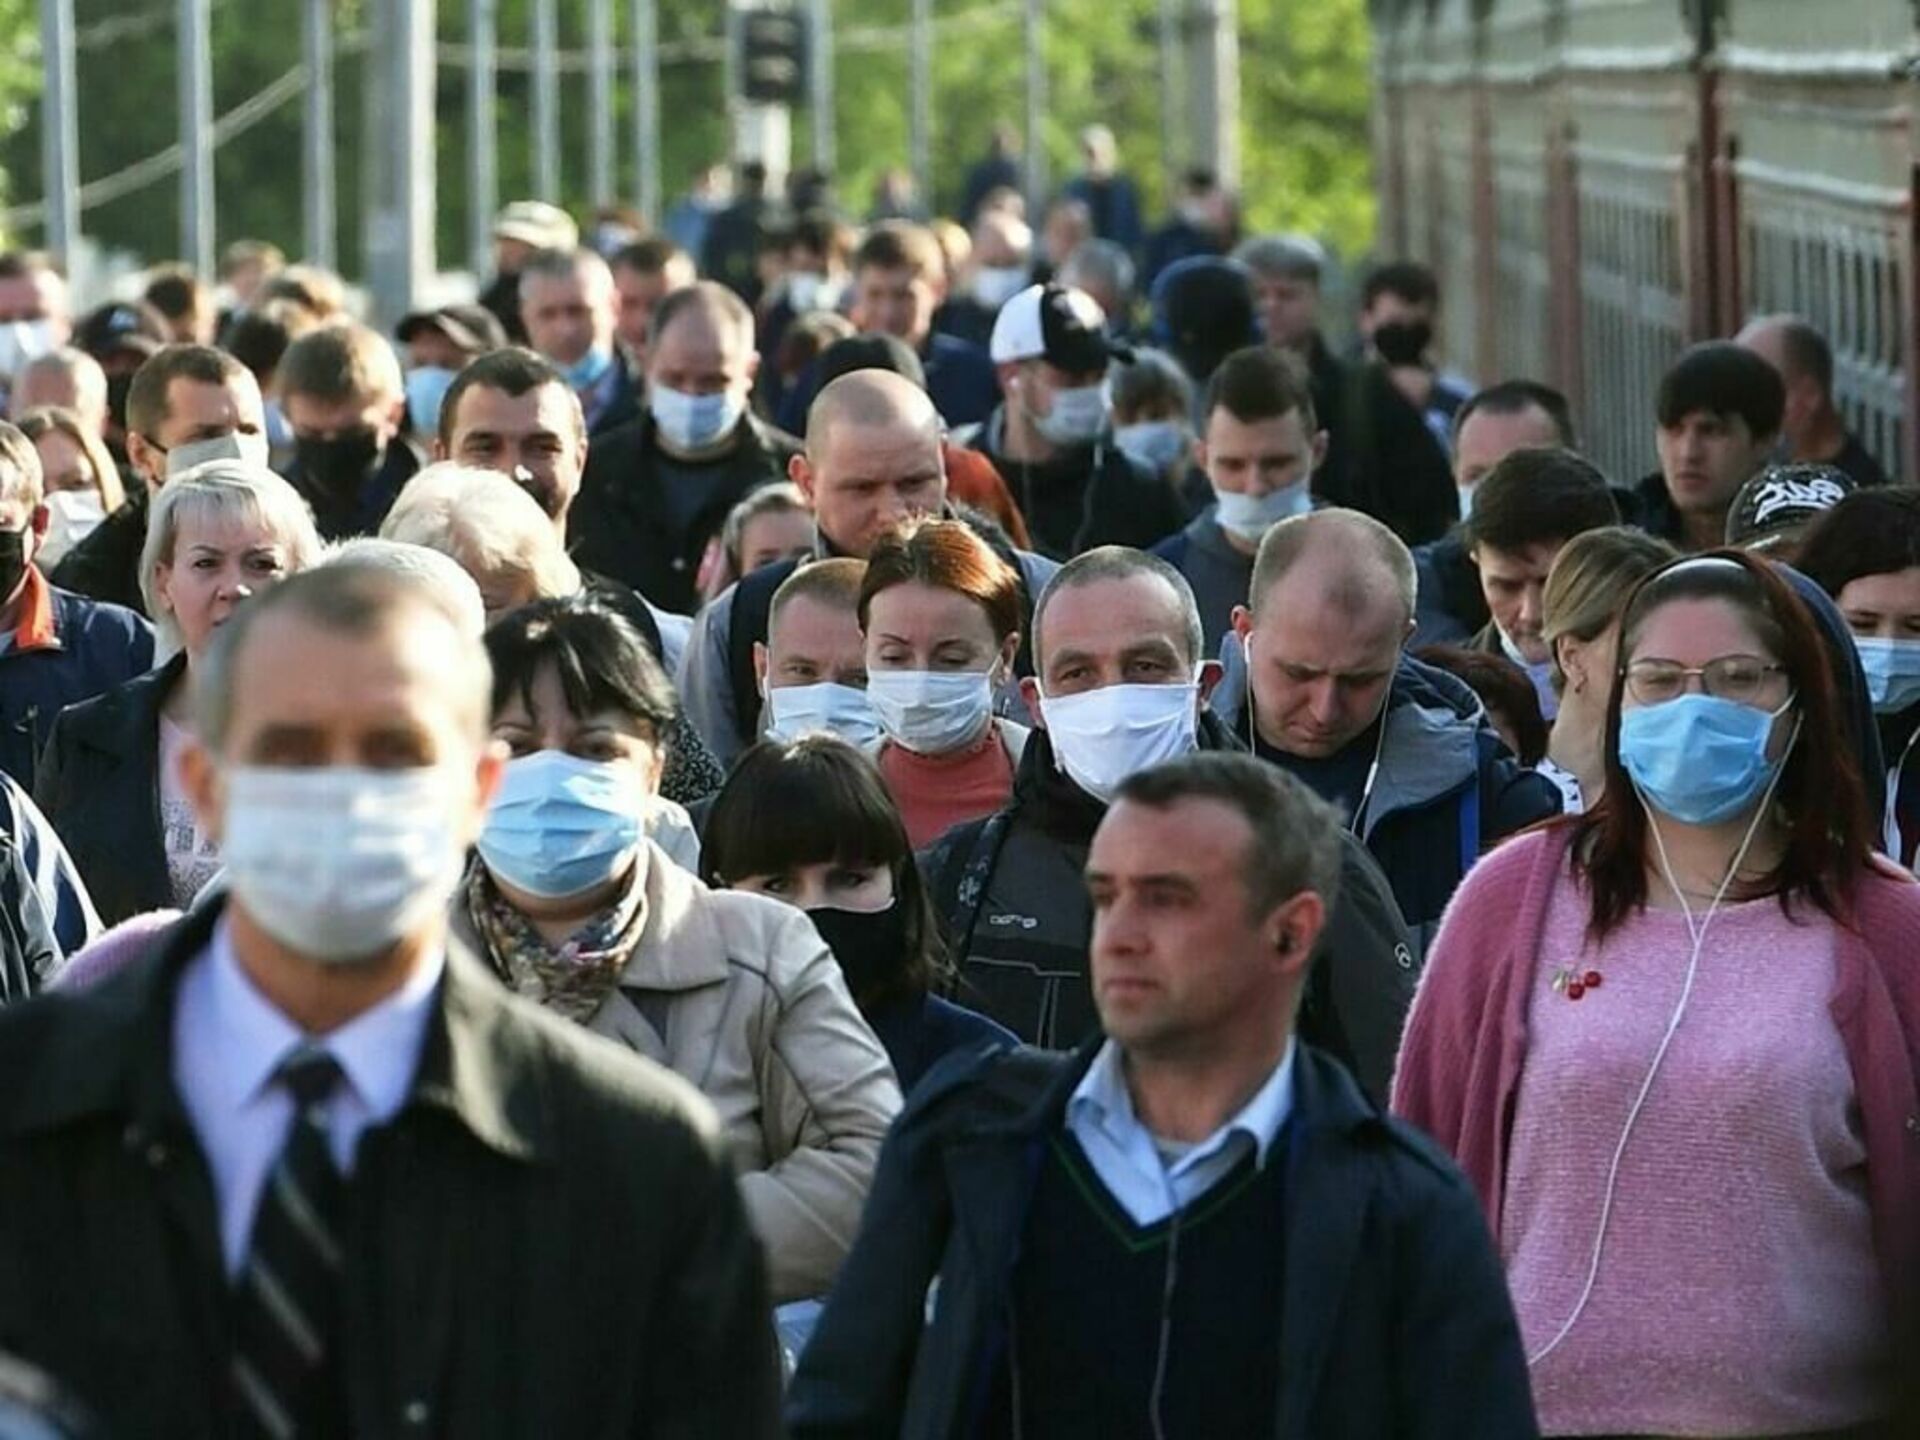 Всего людей в россии. Пандемия Covid-19 в России люди в масках. Ковид 19 люди в масках Россия. Люди в масках на улице. Масочный режим.